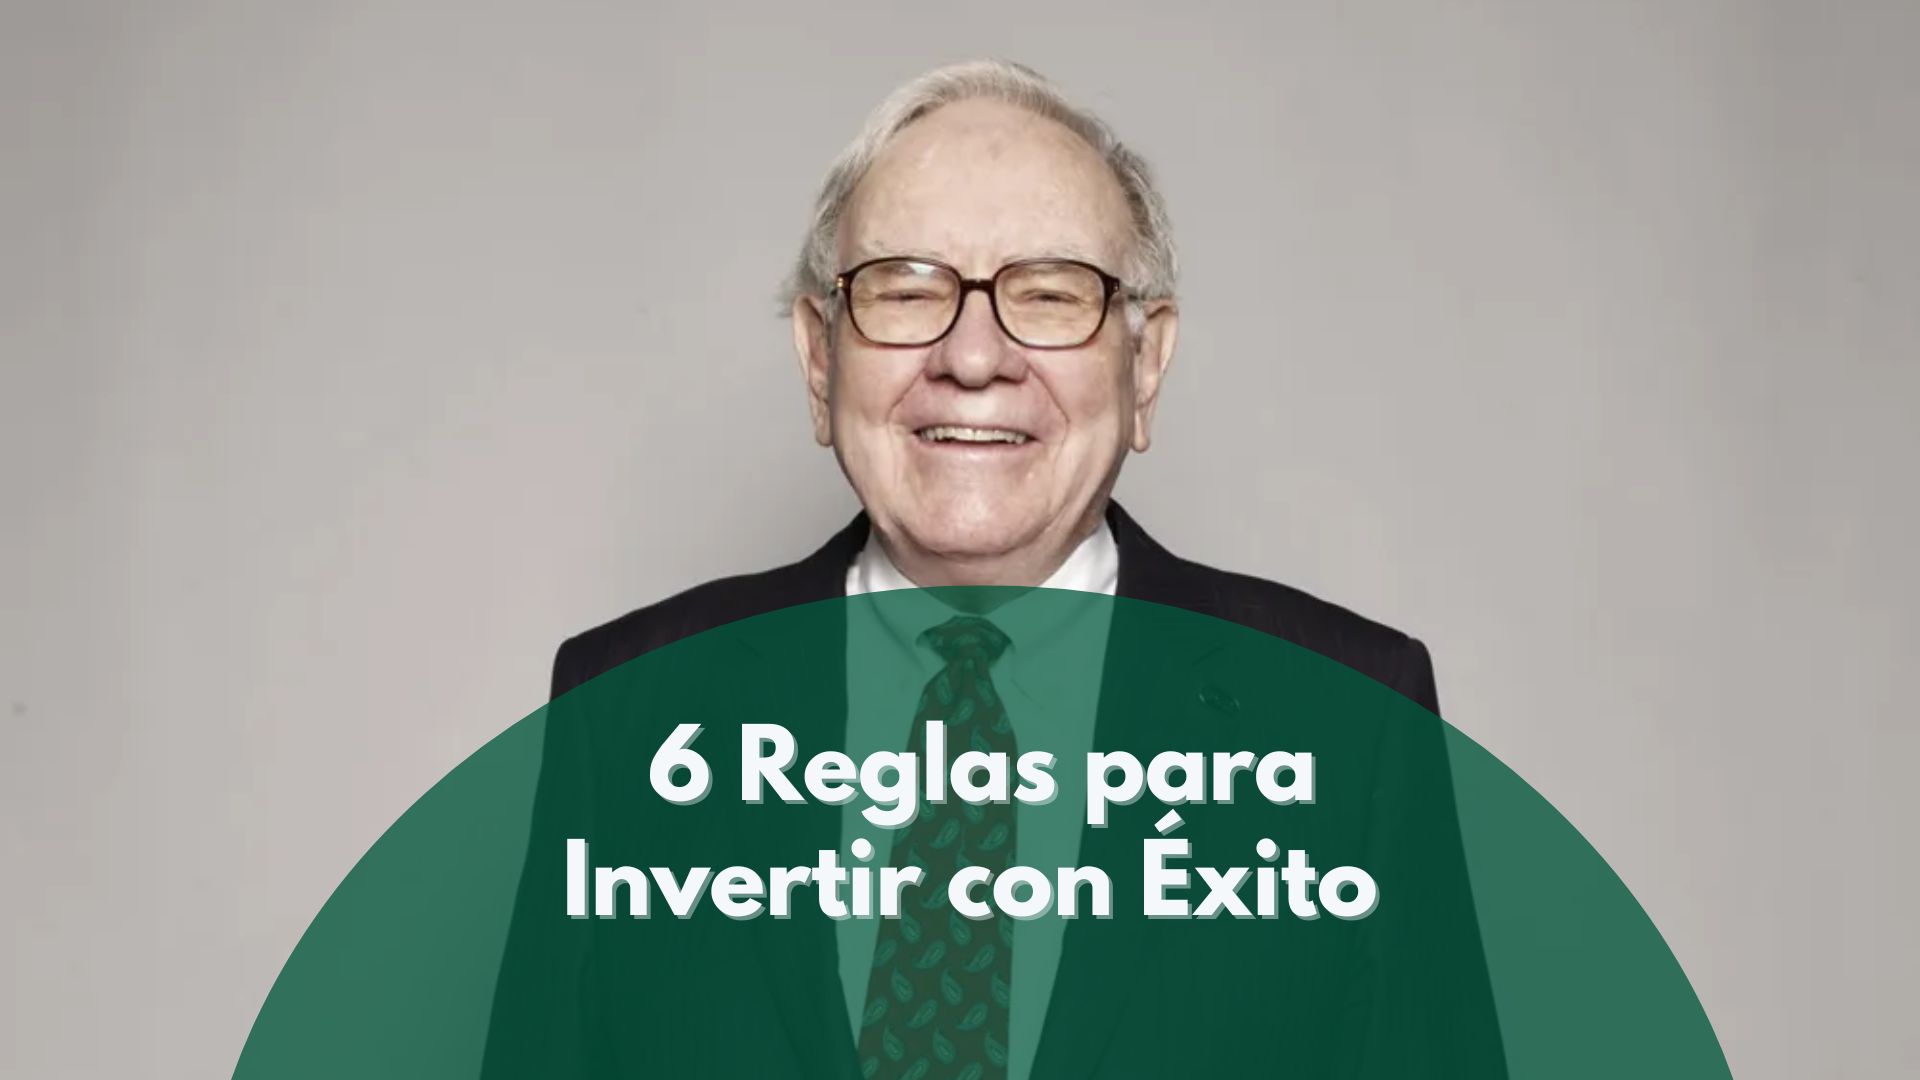 6 Reglas para Invertir con Éxito en la Bolsa de Valores según Warren Buffett